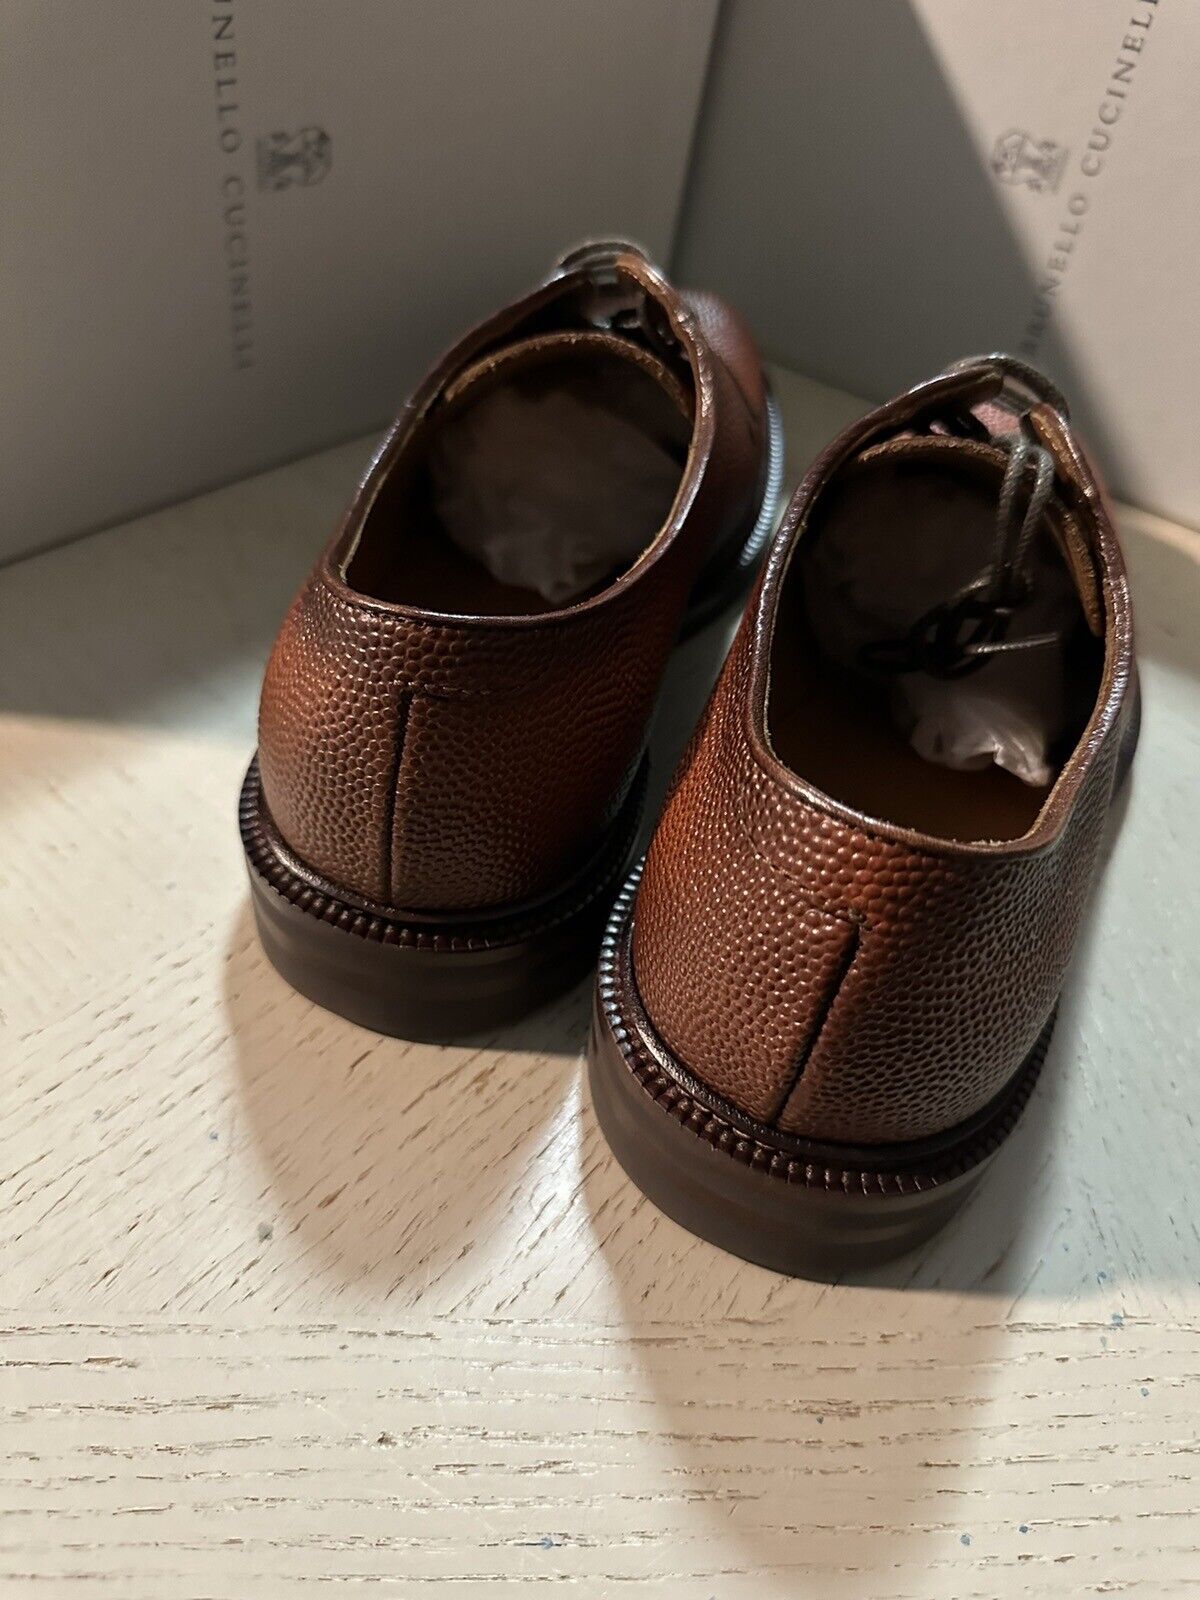 NIB $1250 Brunello Cucinelli Men Grained Leather Shoes LT Burgundy 9 US/42 Eu